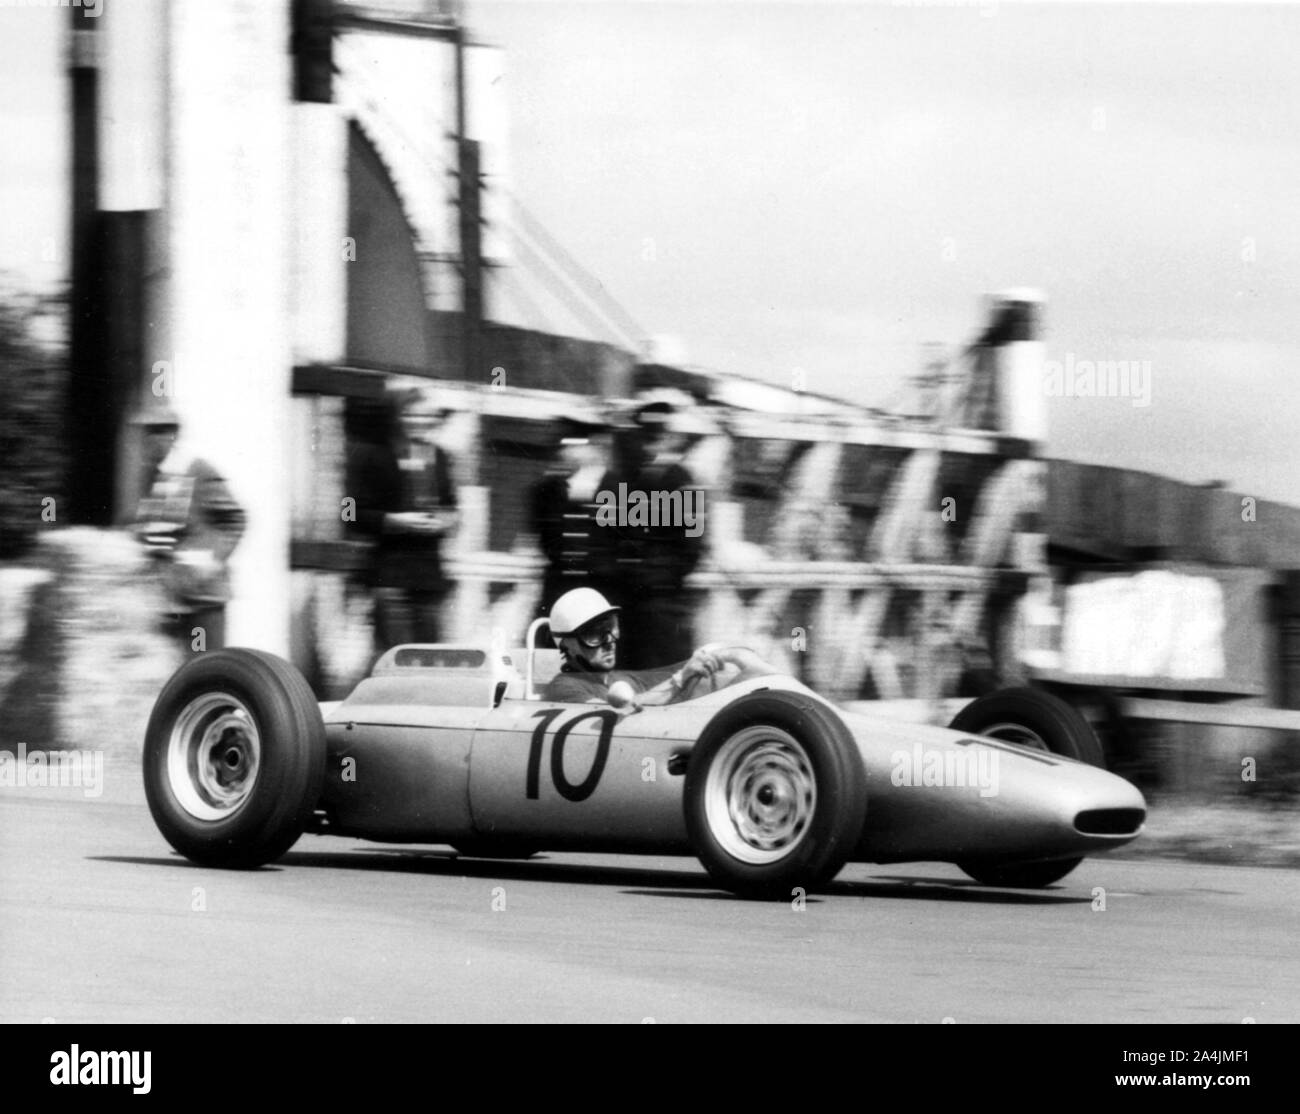 1962 Porsche 804, Joe Bonnier, British Grand Prix. Stock Photo